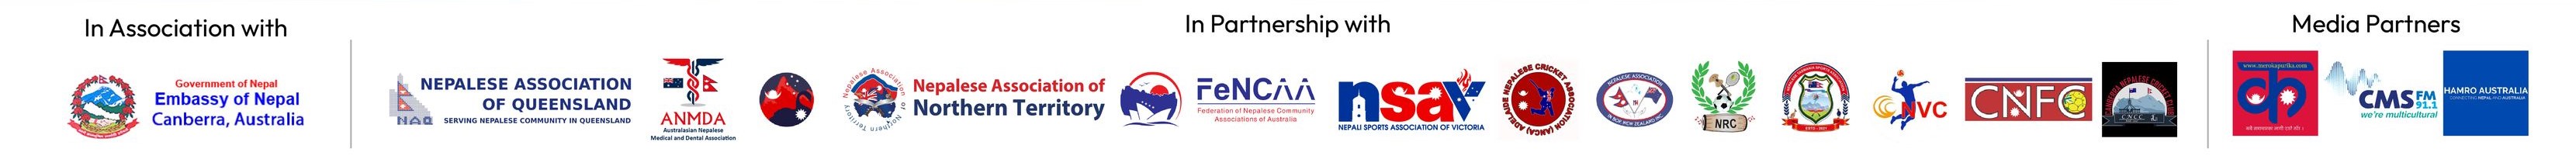 Partner Associations